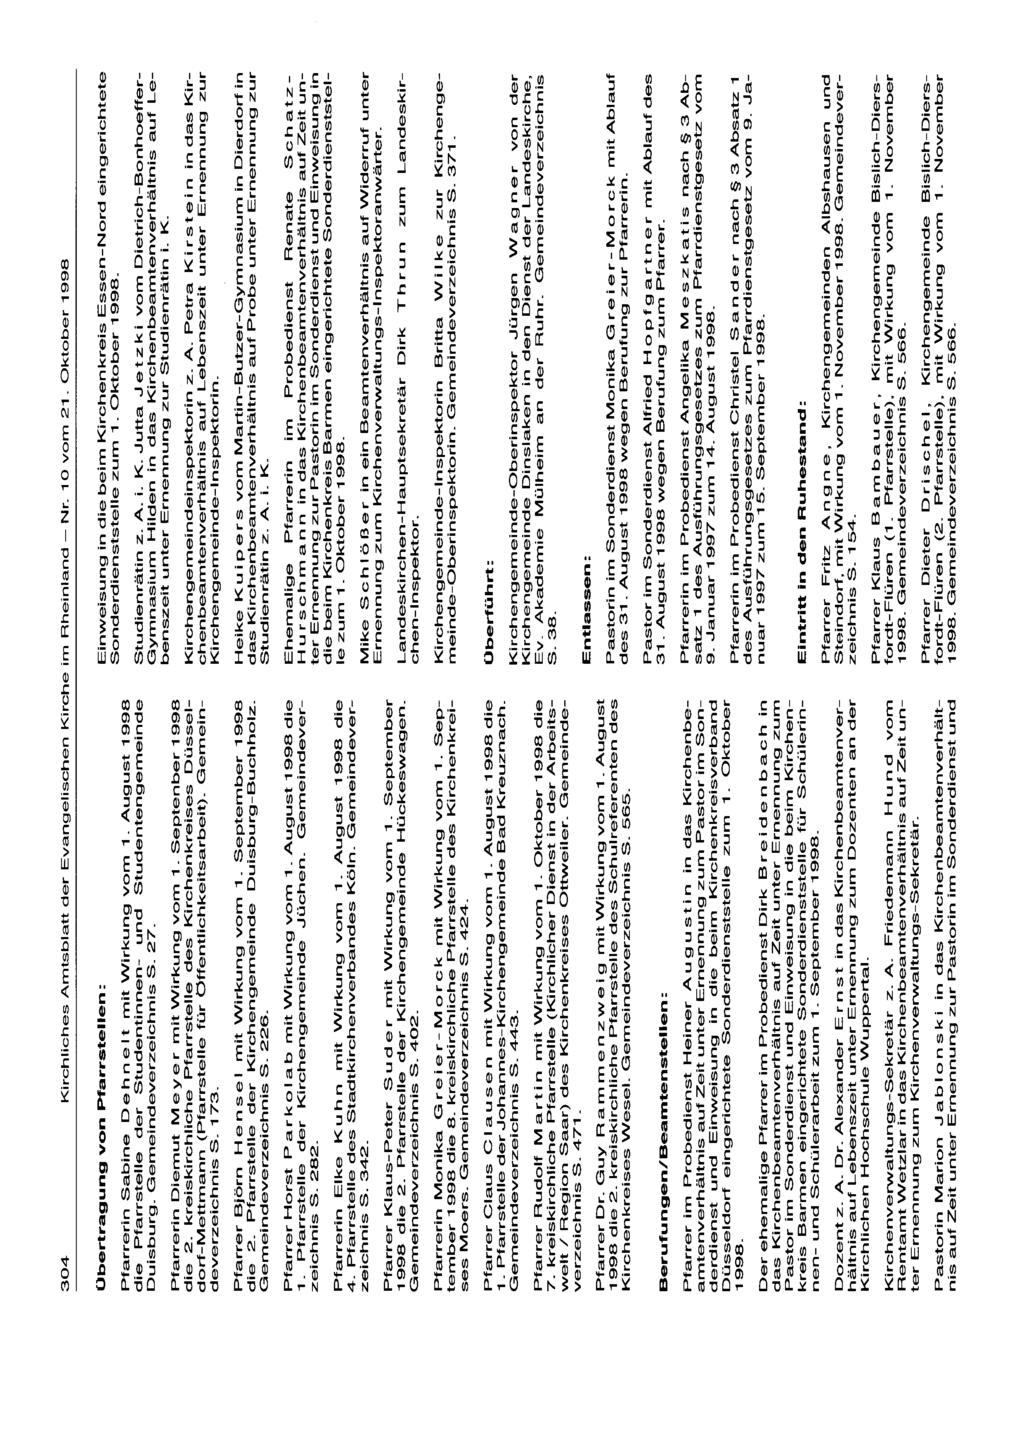 304 Kirchliches Amtsblatt der Evangelischen Kirche im Rheinland - Nr. 10 vom 21. Oktober 1998 Übertragung von Pfarrstellen: Pfarrerin Sabine D e h n e t mit Wirkung vom 1.